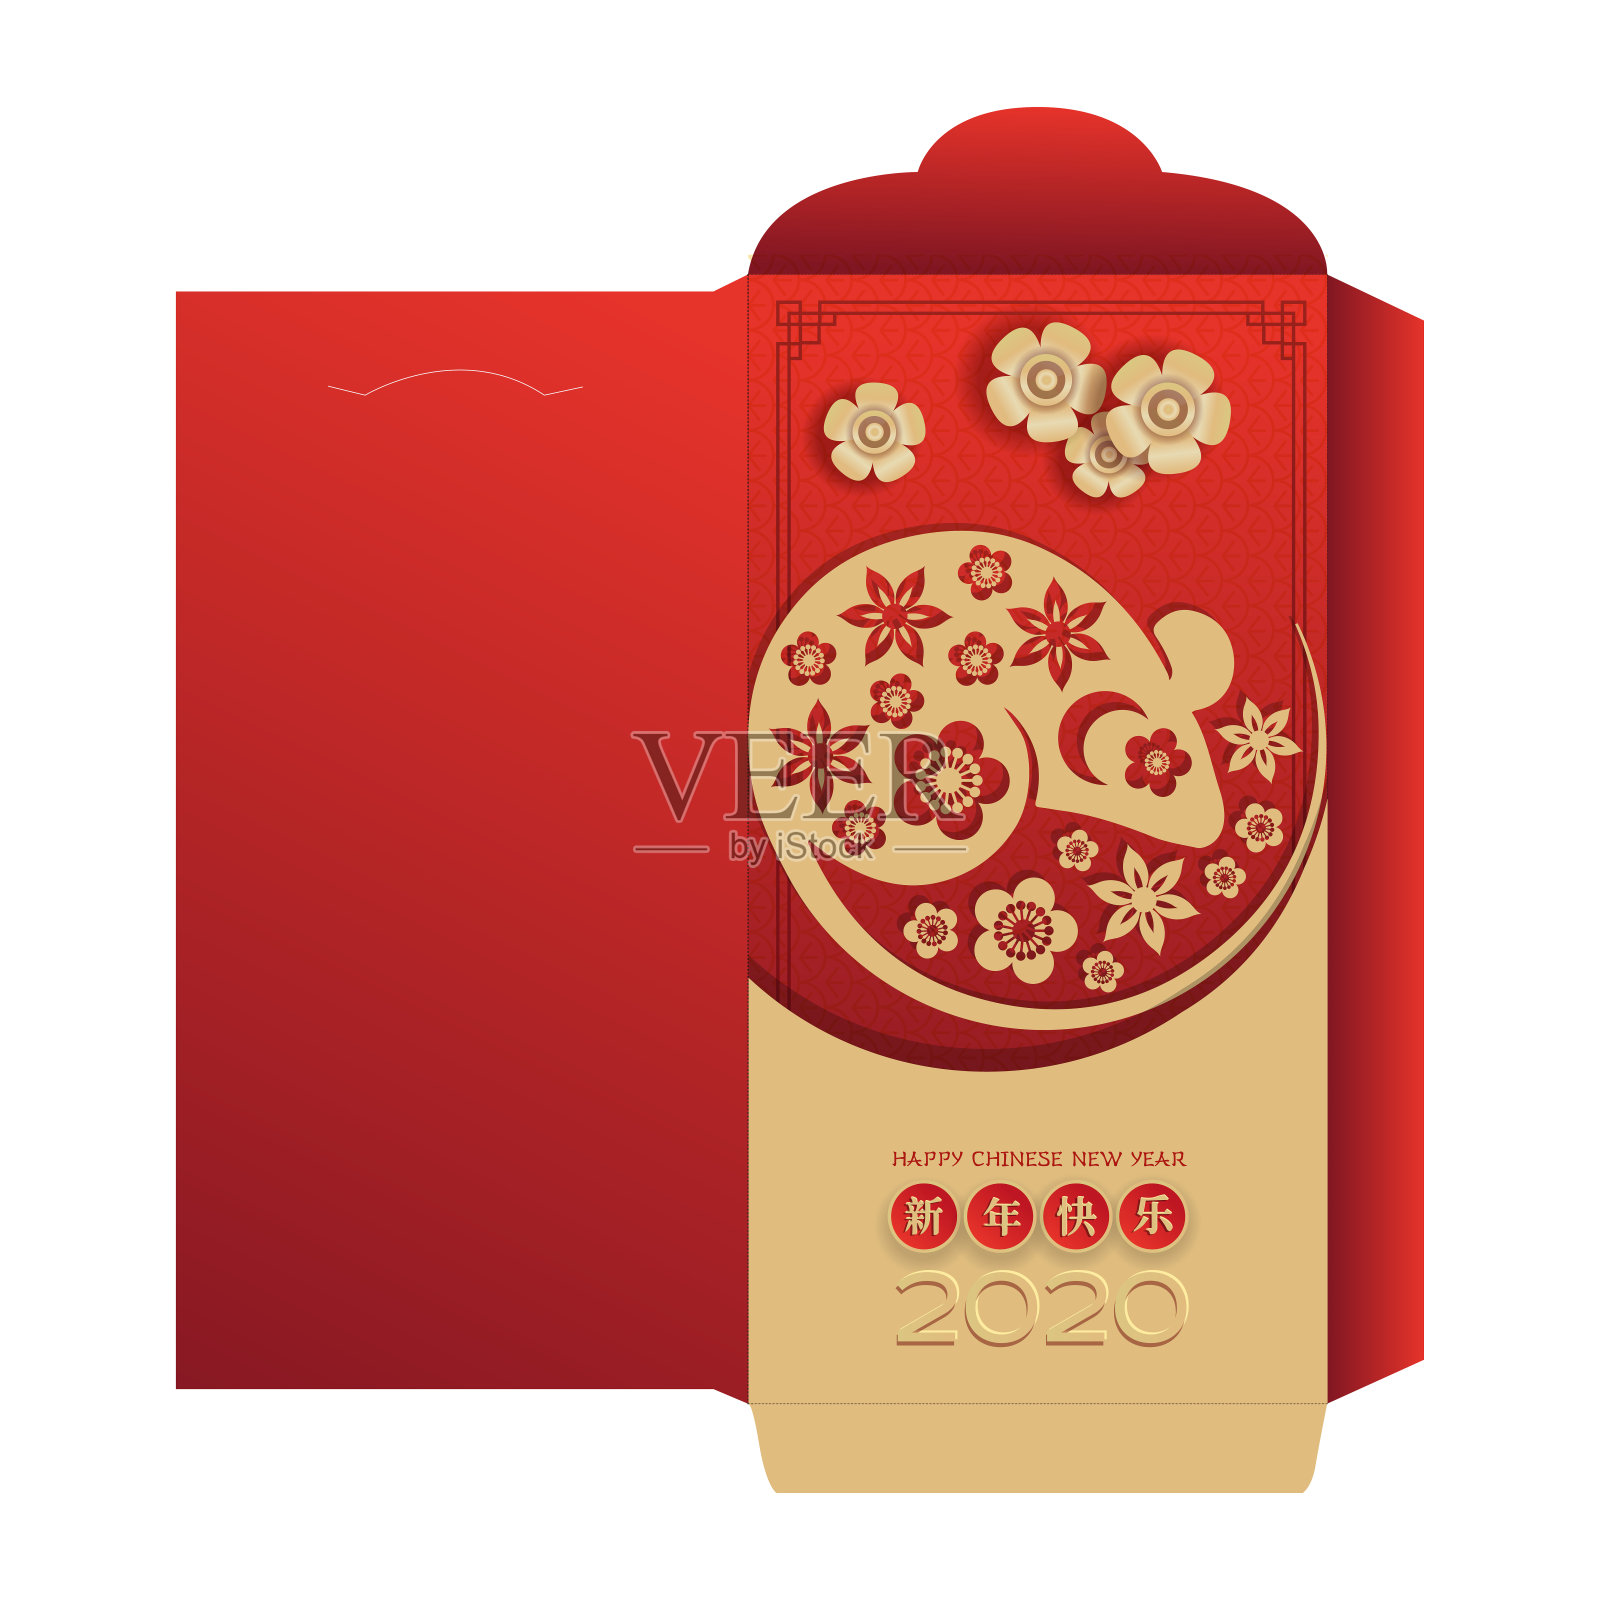 中国新年红包红包设计。红色和金色的剪纸老鼠人物在阴阳概念，花和亚洲工艺风格。中文翻译-新年快乐设计模板素材